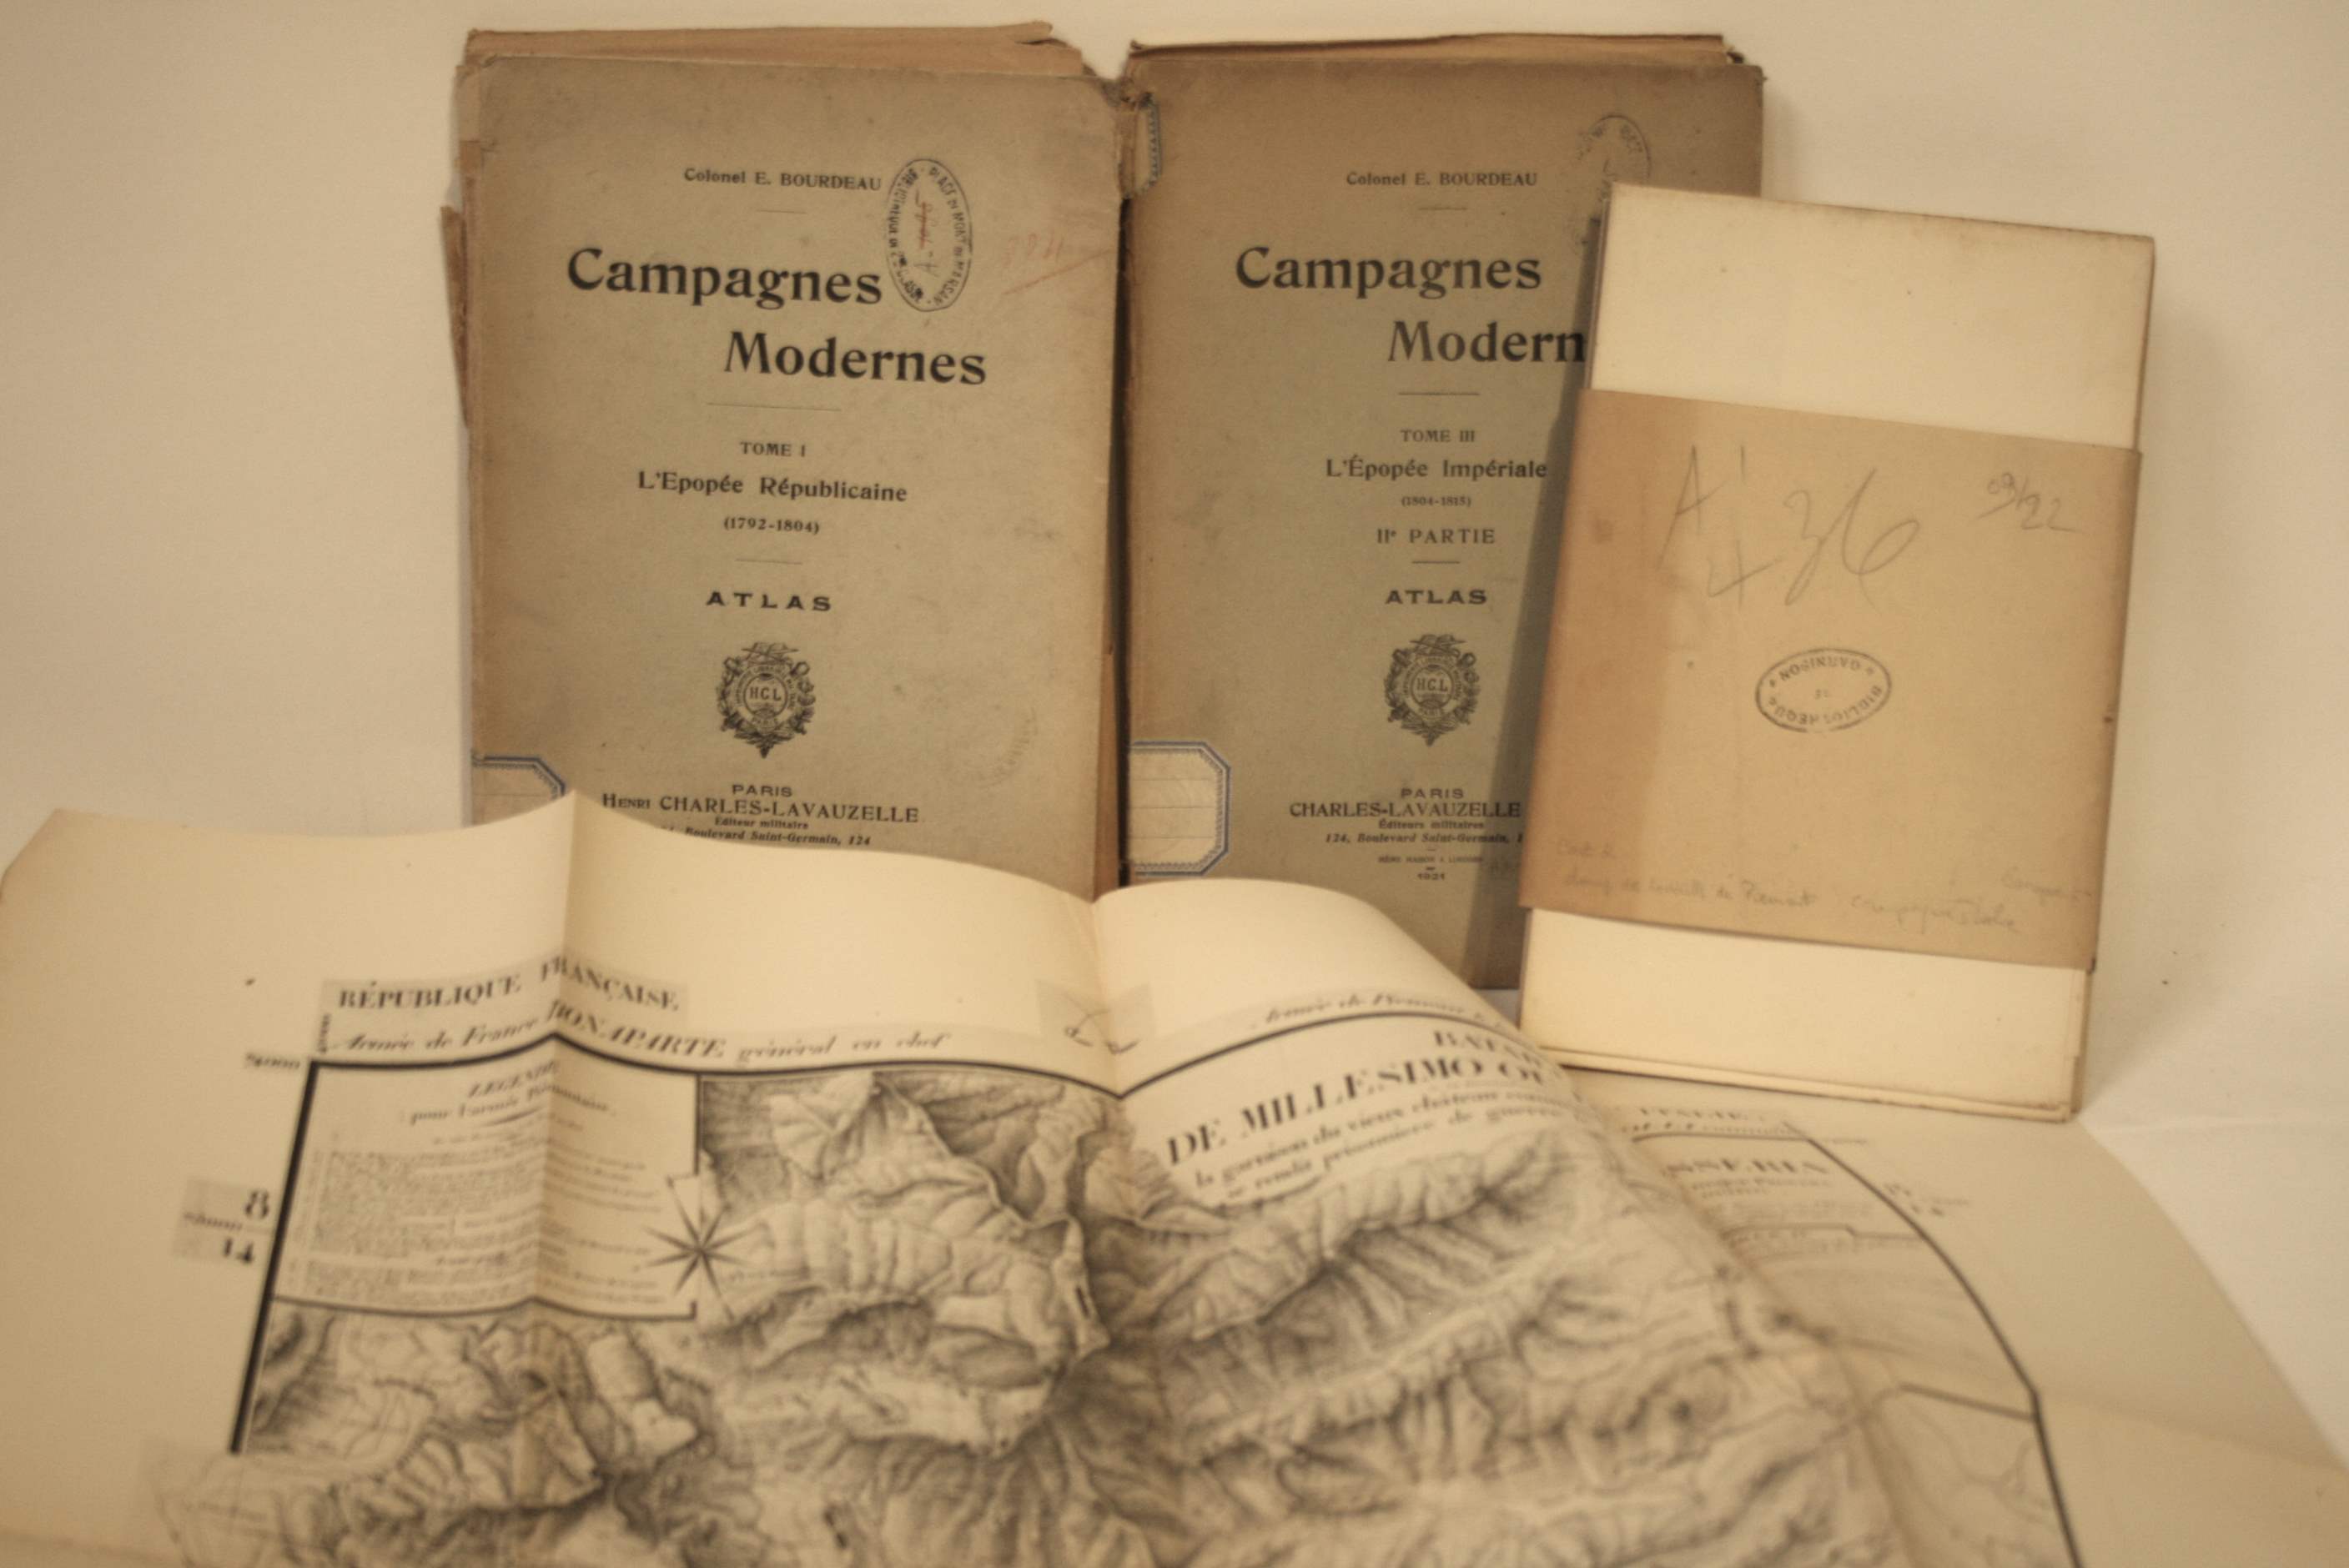 Campagnes Modernes : 2 Atlas (Tome I & III) de l'Epopée Républicaine (1792-1804) et [...]